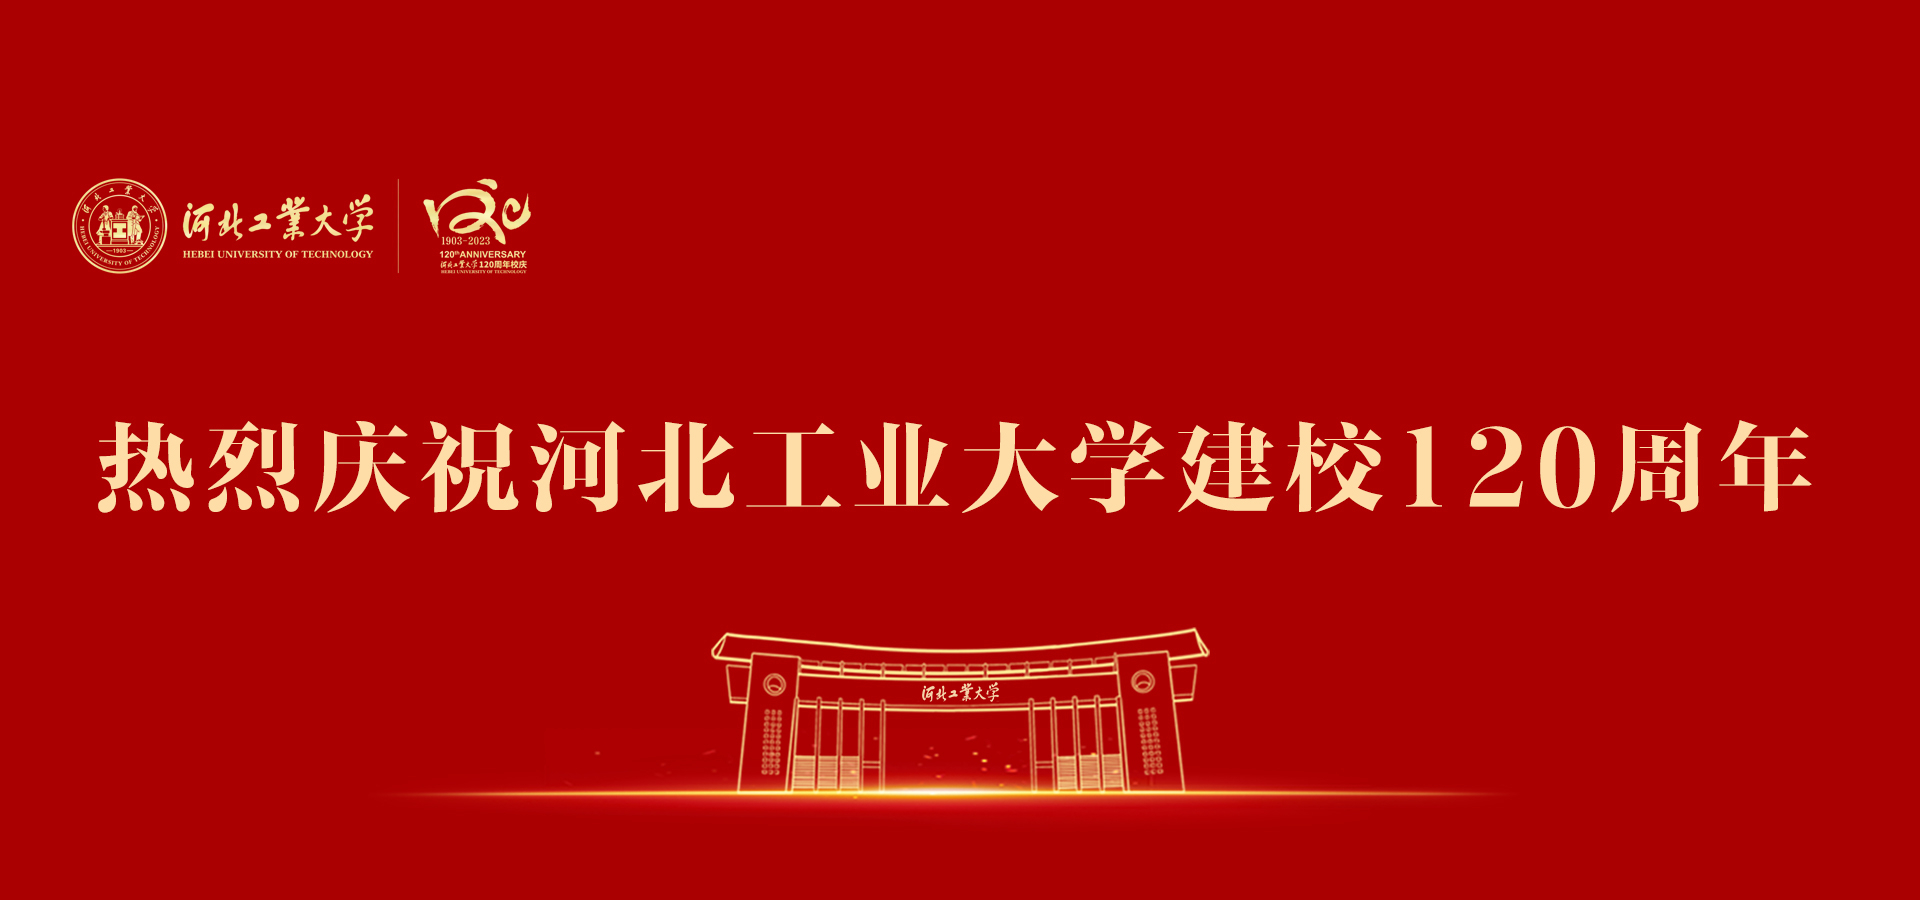 热烈庆祝m6米乐app
建校120周年官网.jpg